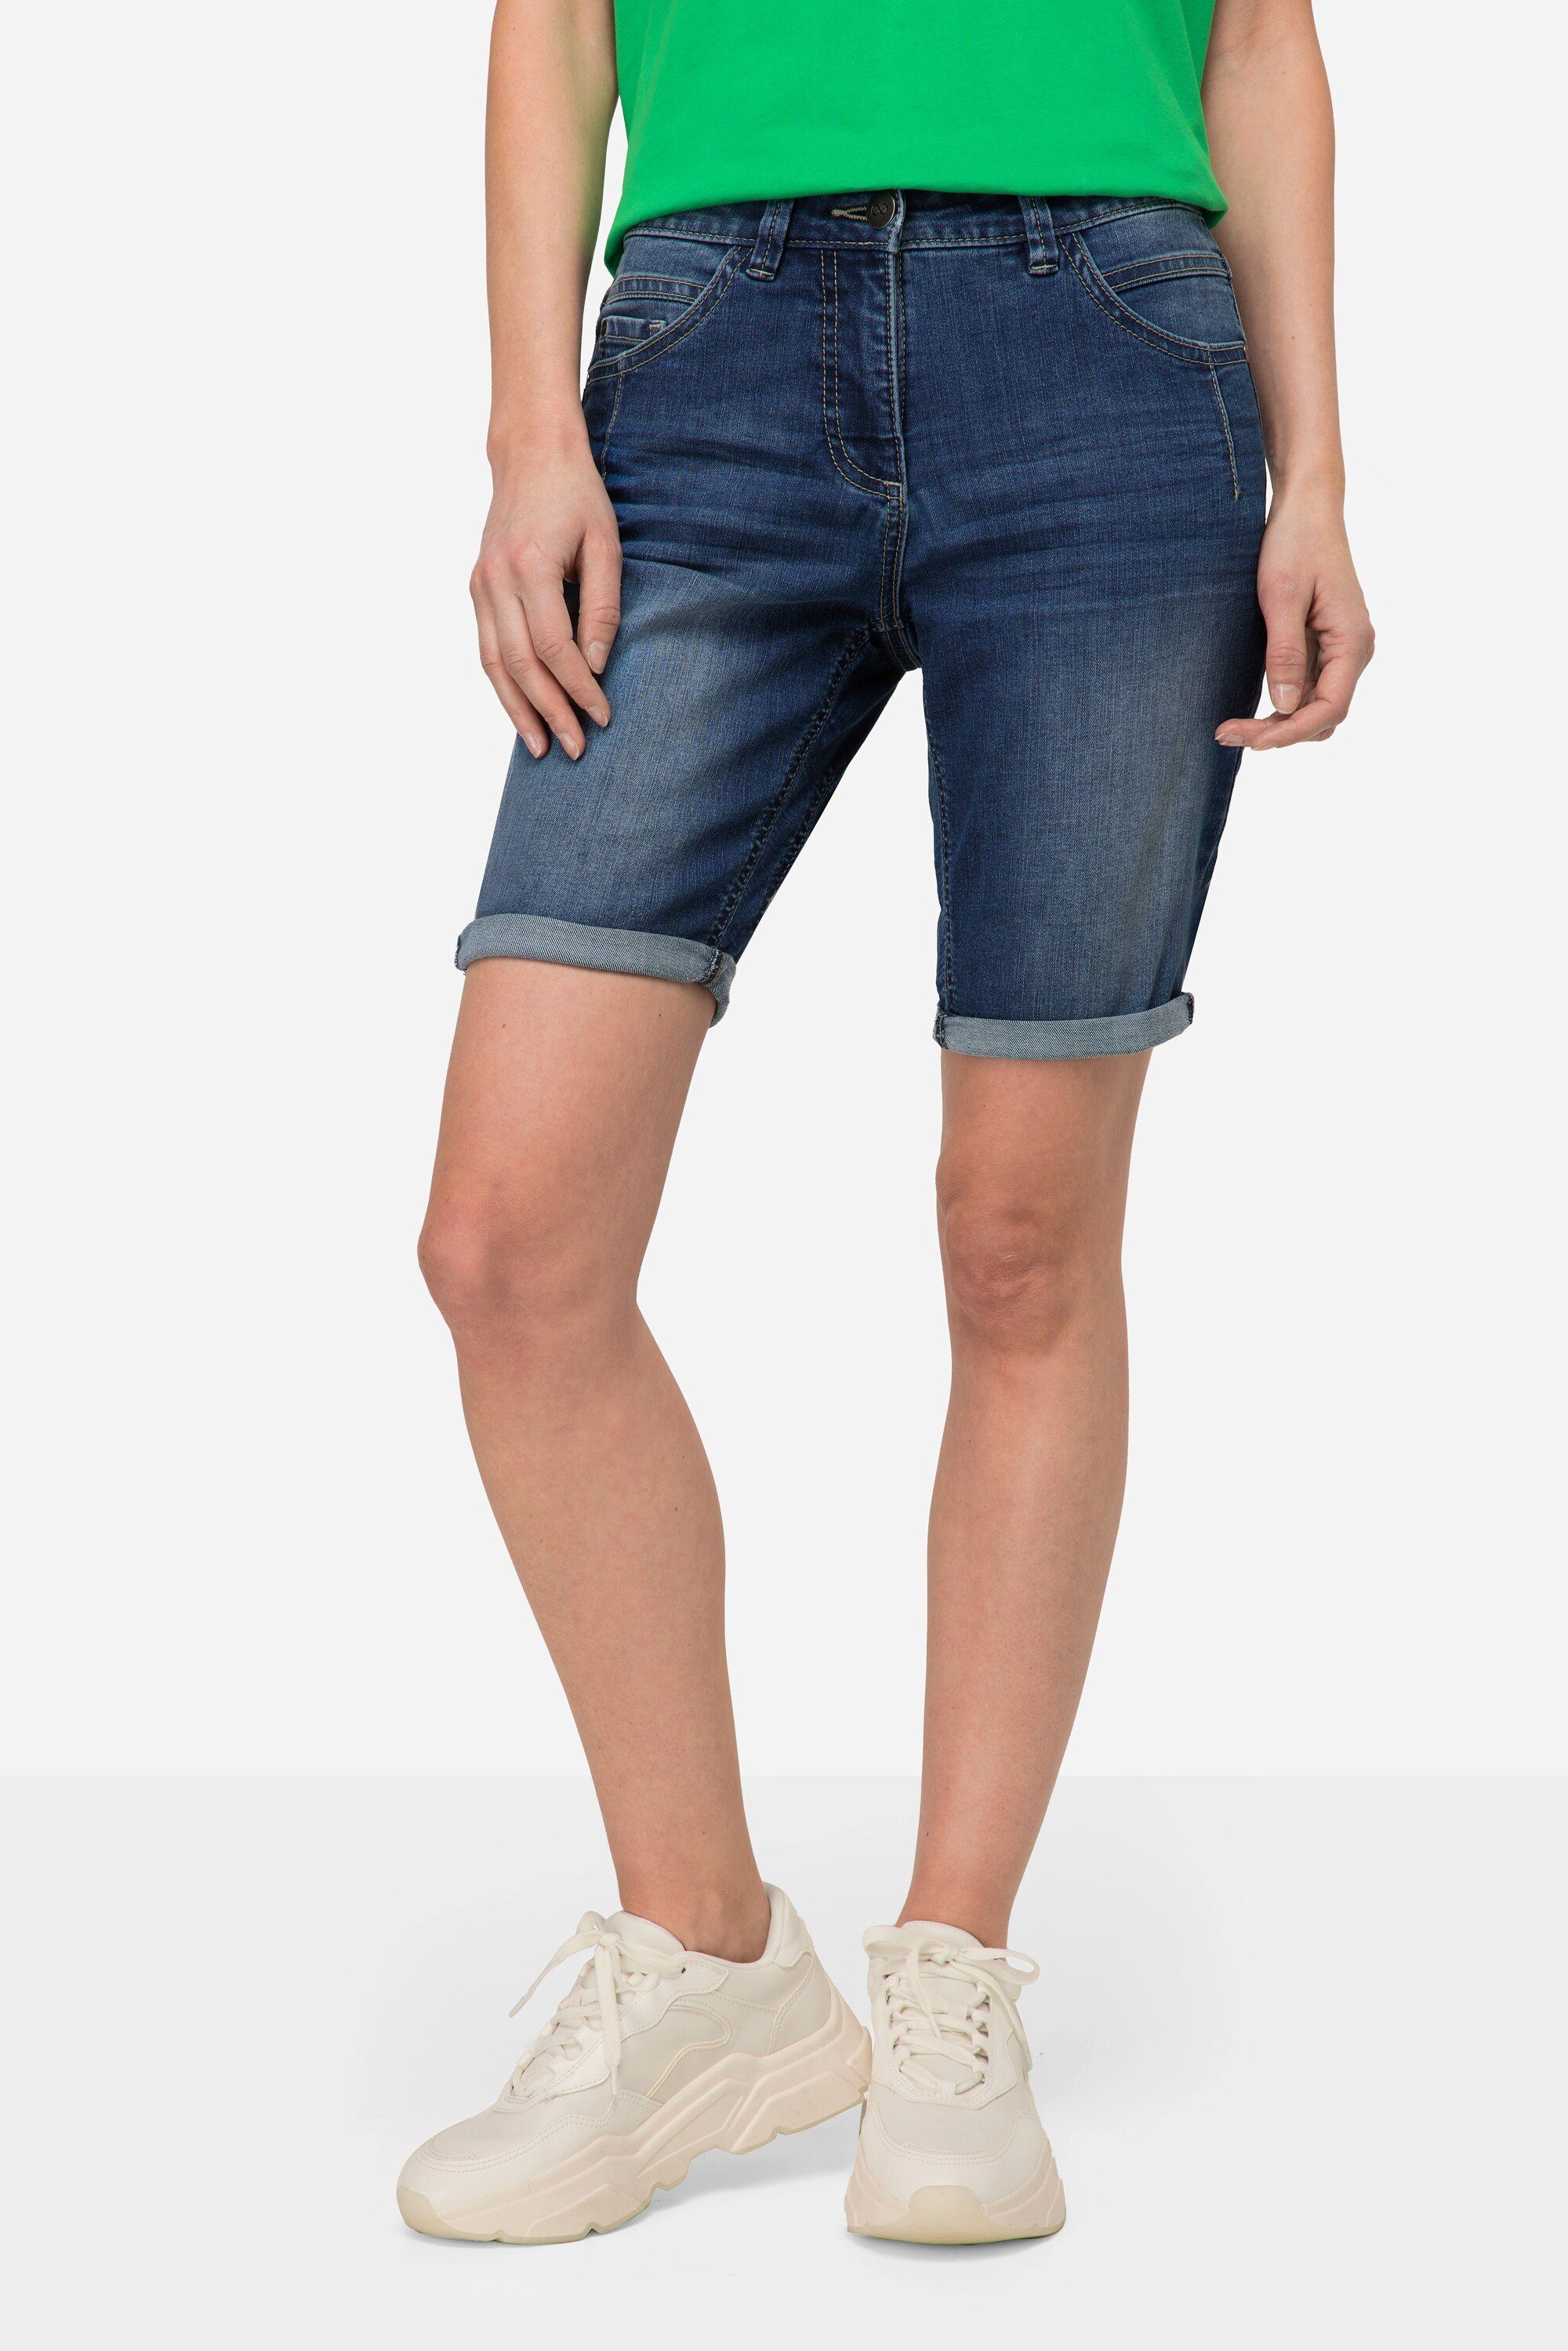 Jeans-Shorts denim blue 5-Pocket Regular-fit-Jeans Laurasøn Elastikbund